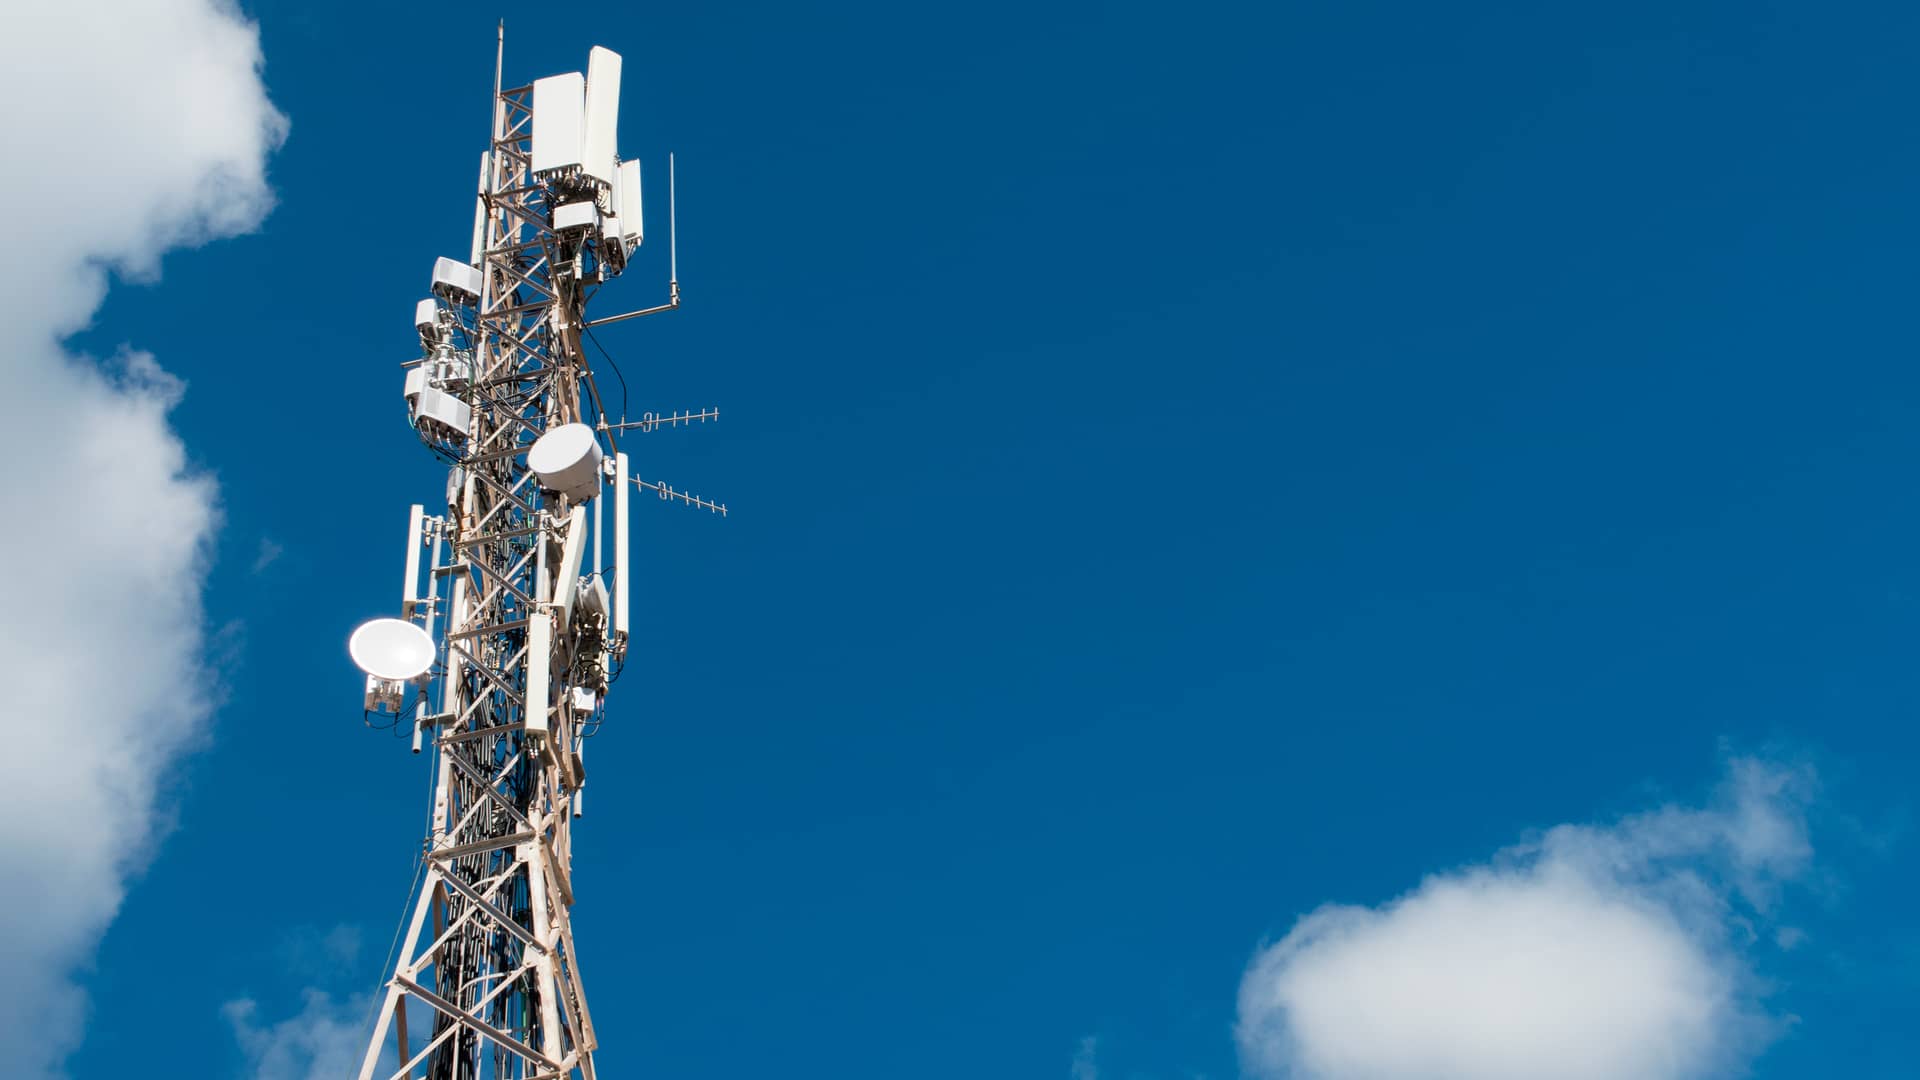 Antena telefónica simboliza cobertura de compañía ptvtelecom